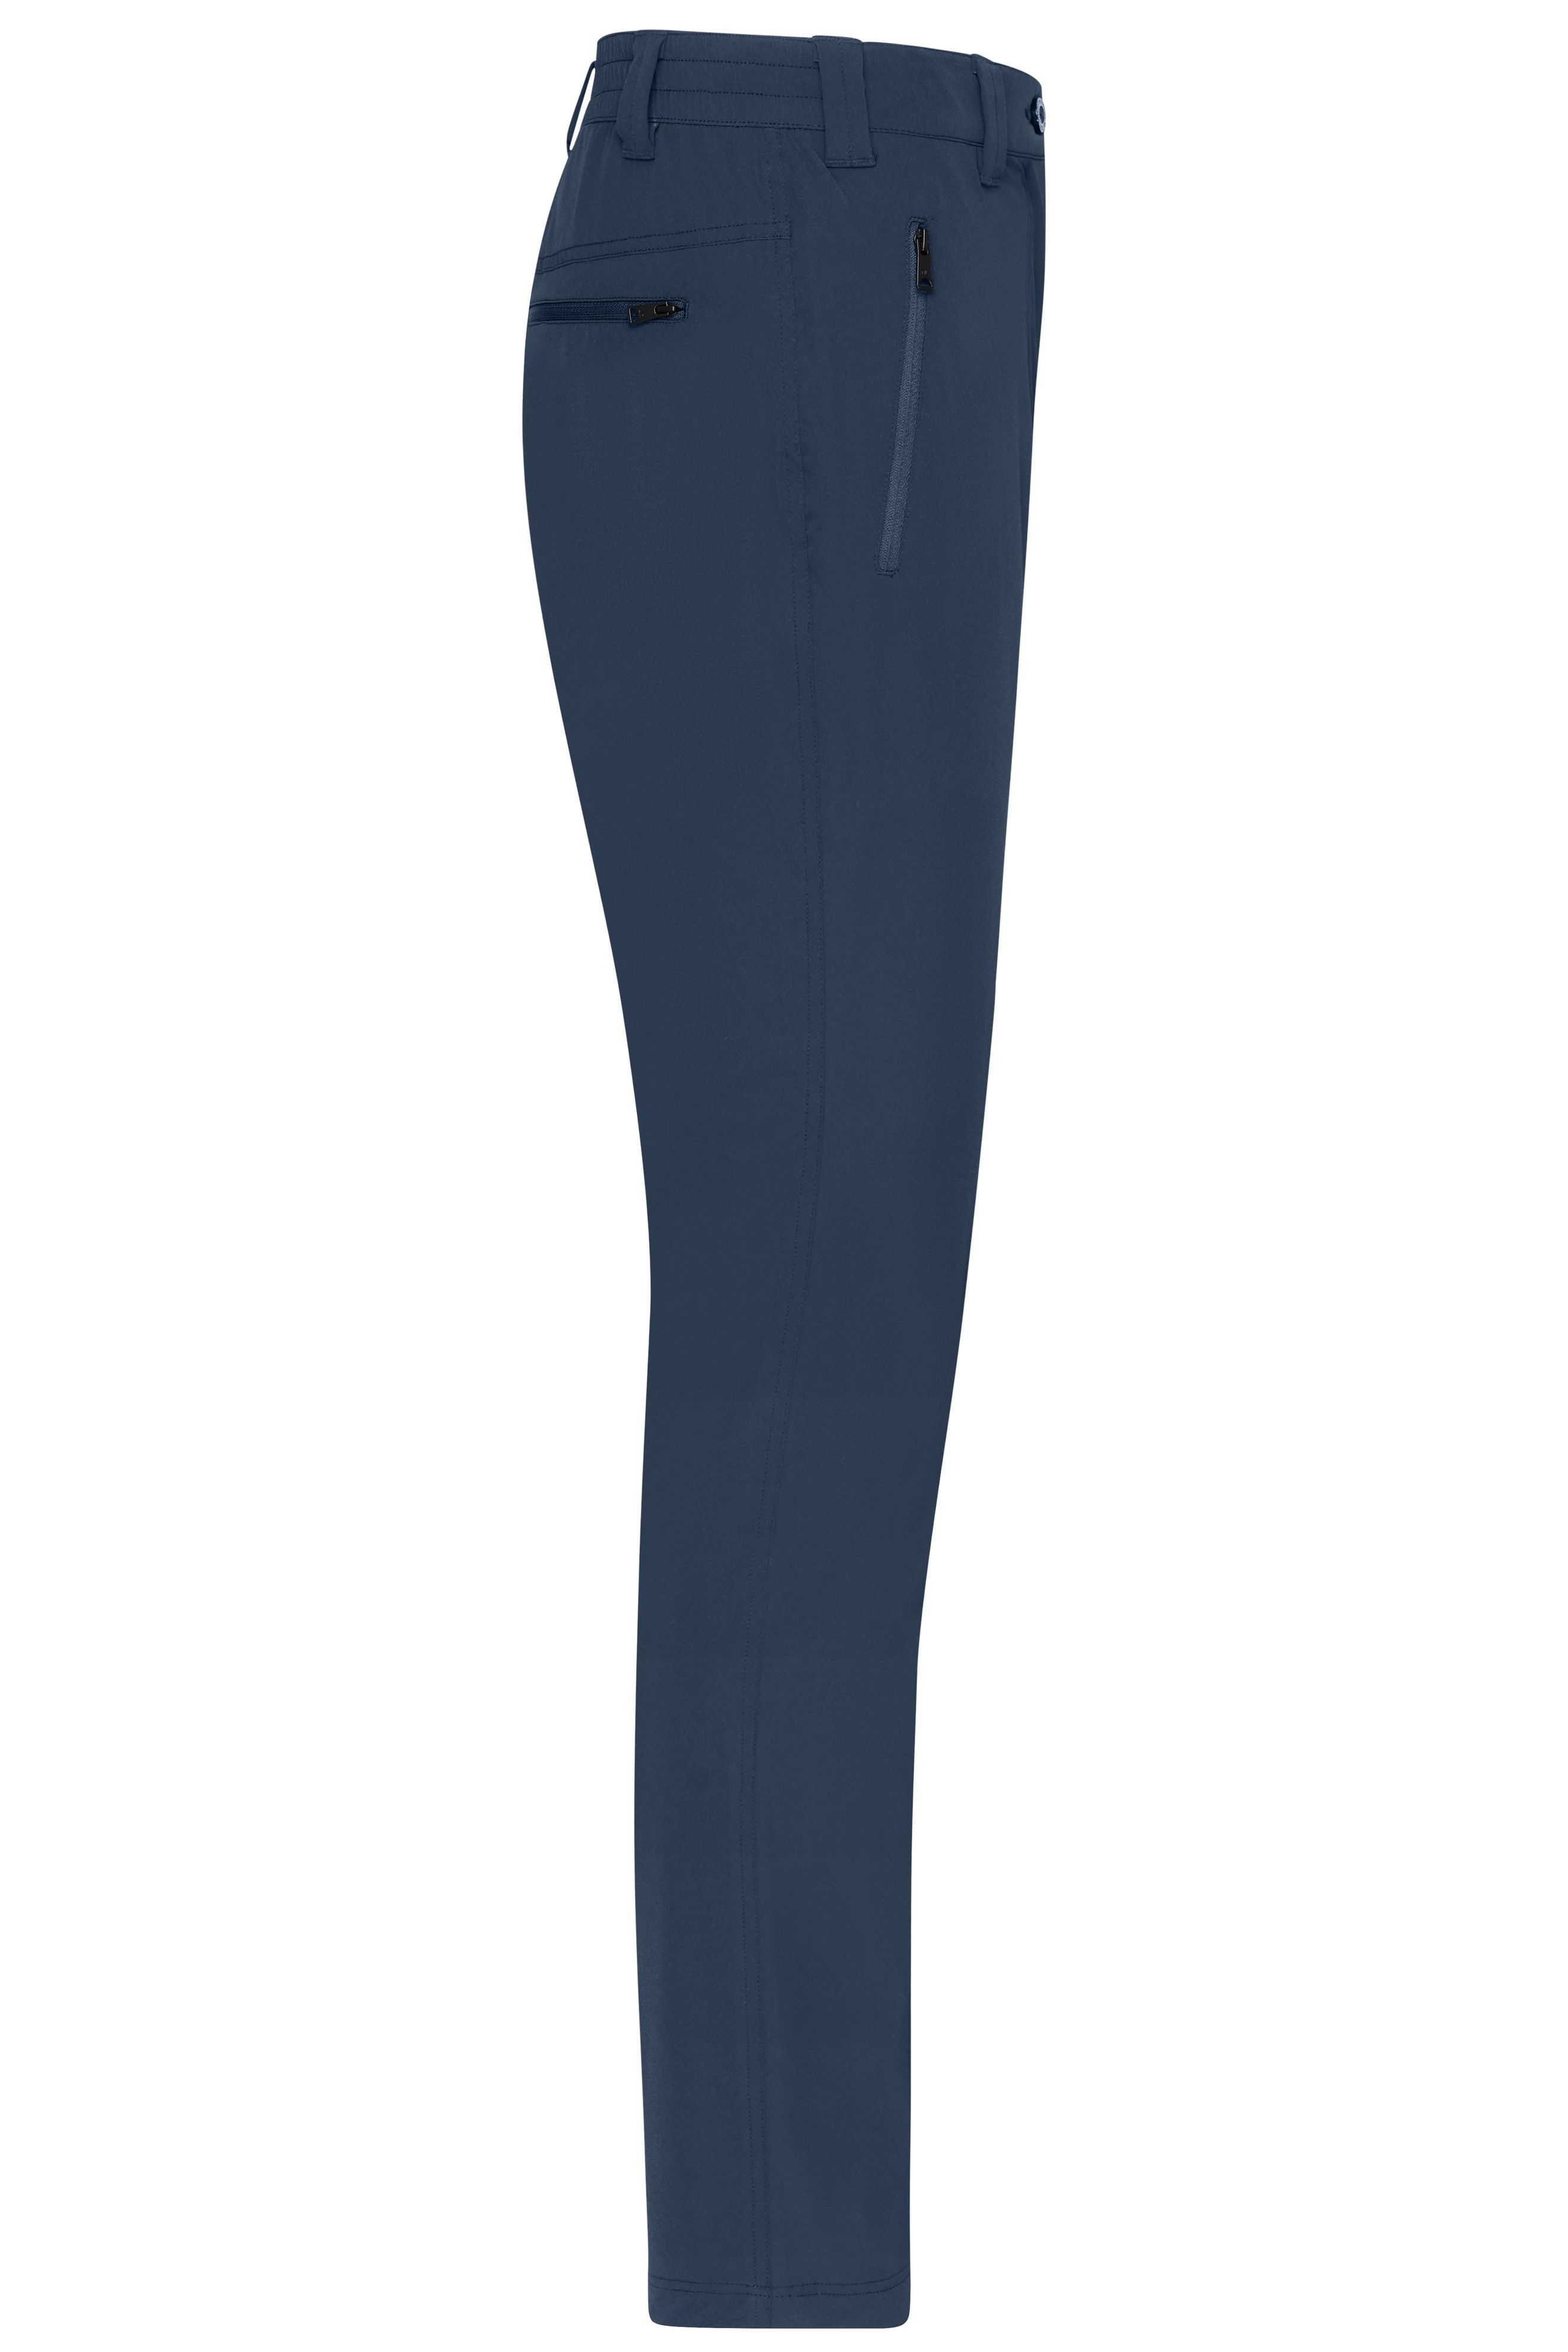 Men's Pants JN1208 Bi-elastische Hose in sportlicher Optik